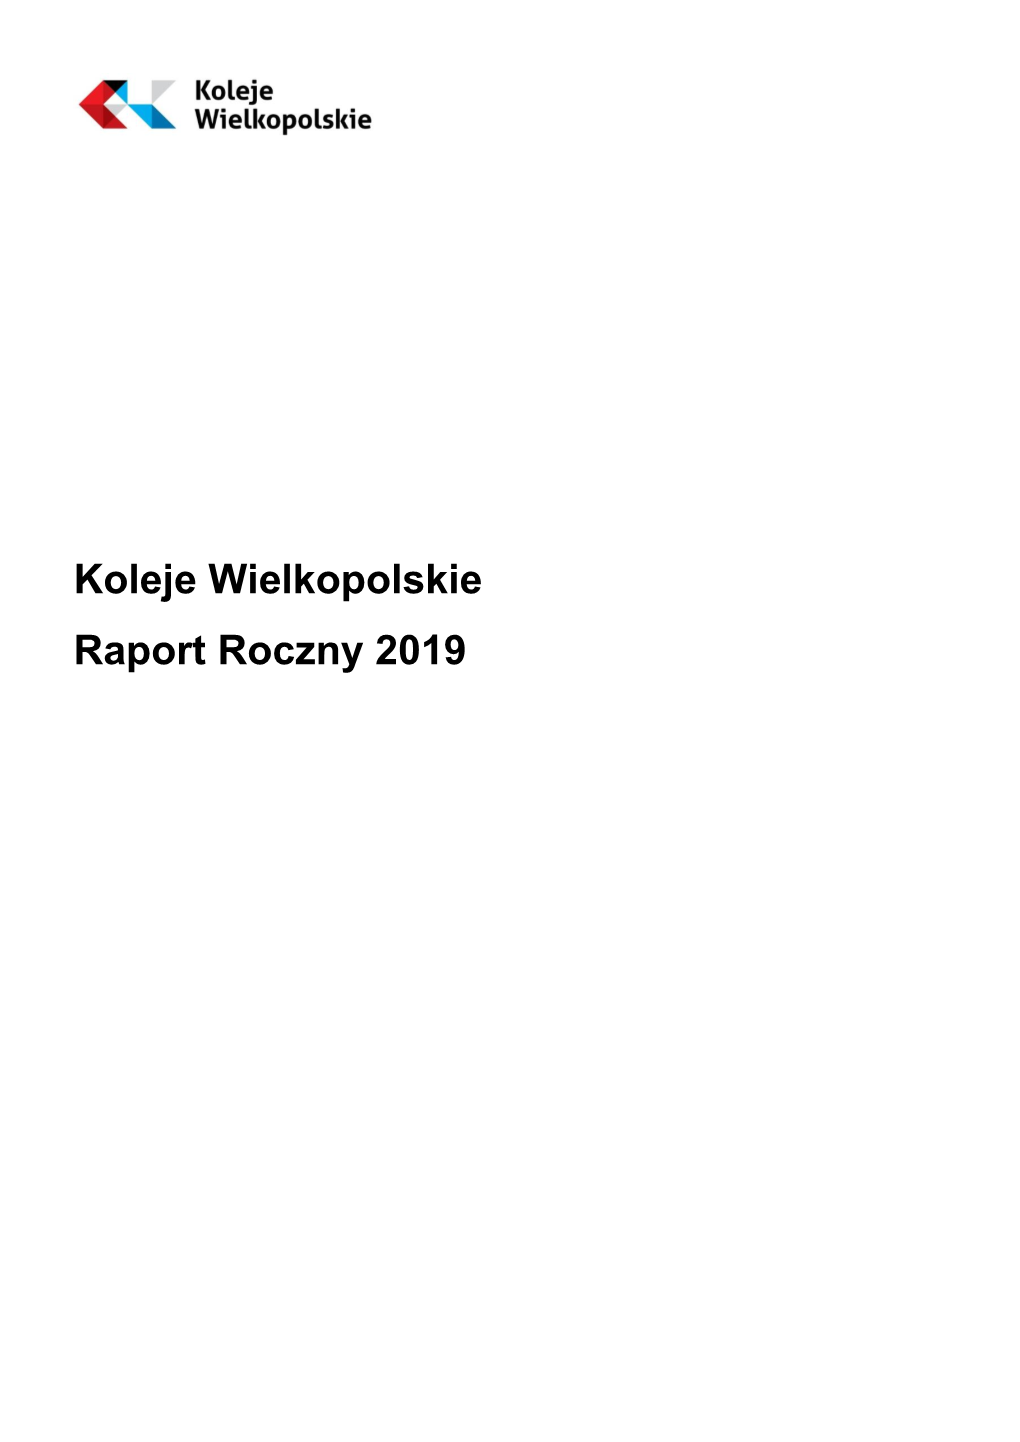 Koleje Wielkopolskie Raport Roczny 2019